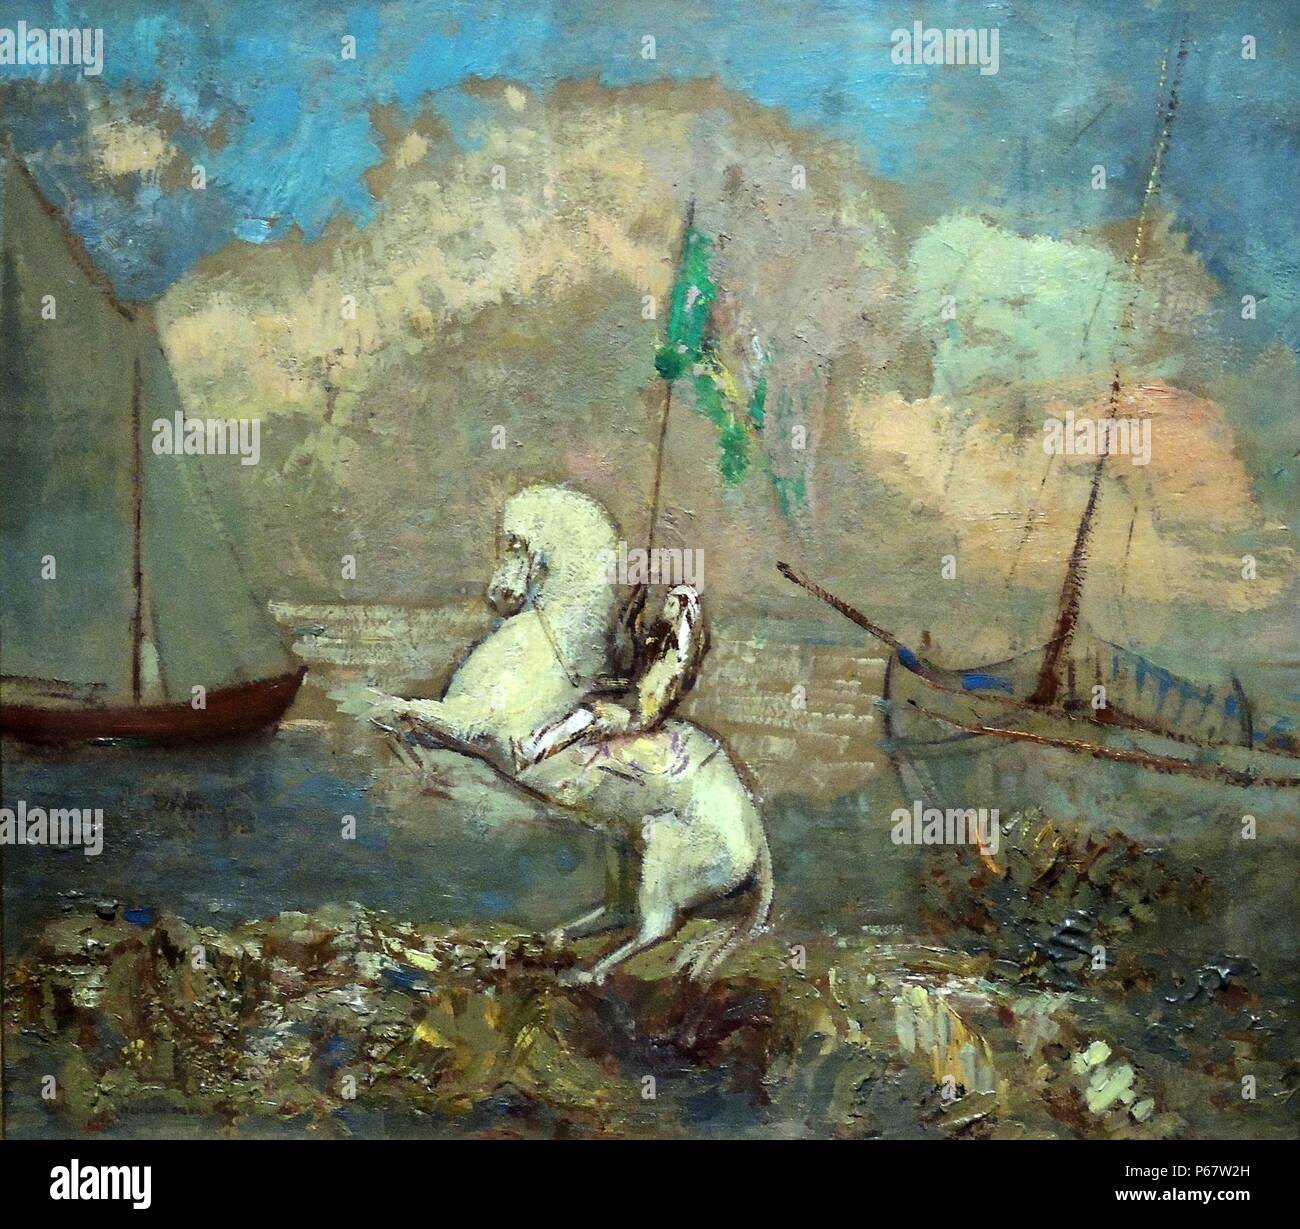 Odilon Redon (1840-1916) Reiter auf dem Strand mit zwei Schiffen. Dieses küstenstreifens Szene zeigt eine Aufzucht weißes Pferd mit einem Reiter, der eine grüne Standard wie eine mittelalterliche Ritter. Mit Blick auf das Meer jenseits der Küste das Wasser gelassen wird. Zwei Schiffe Frame die Zusammensetzung auf beiden Seiten. Stockfoto